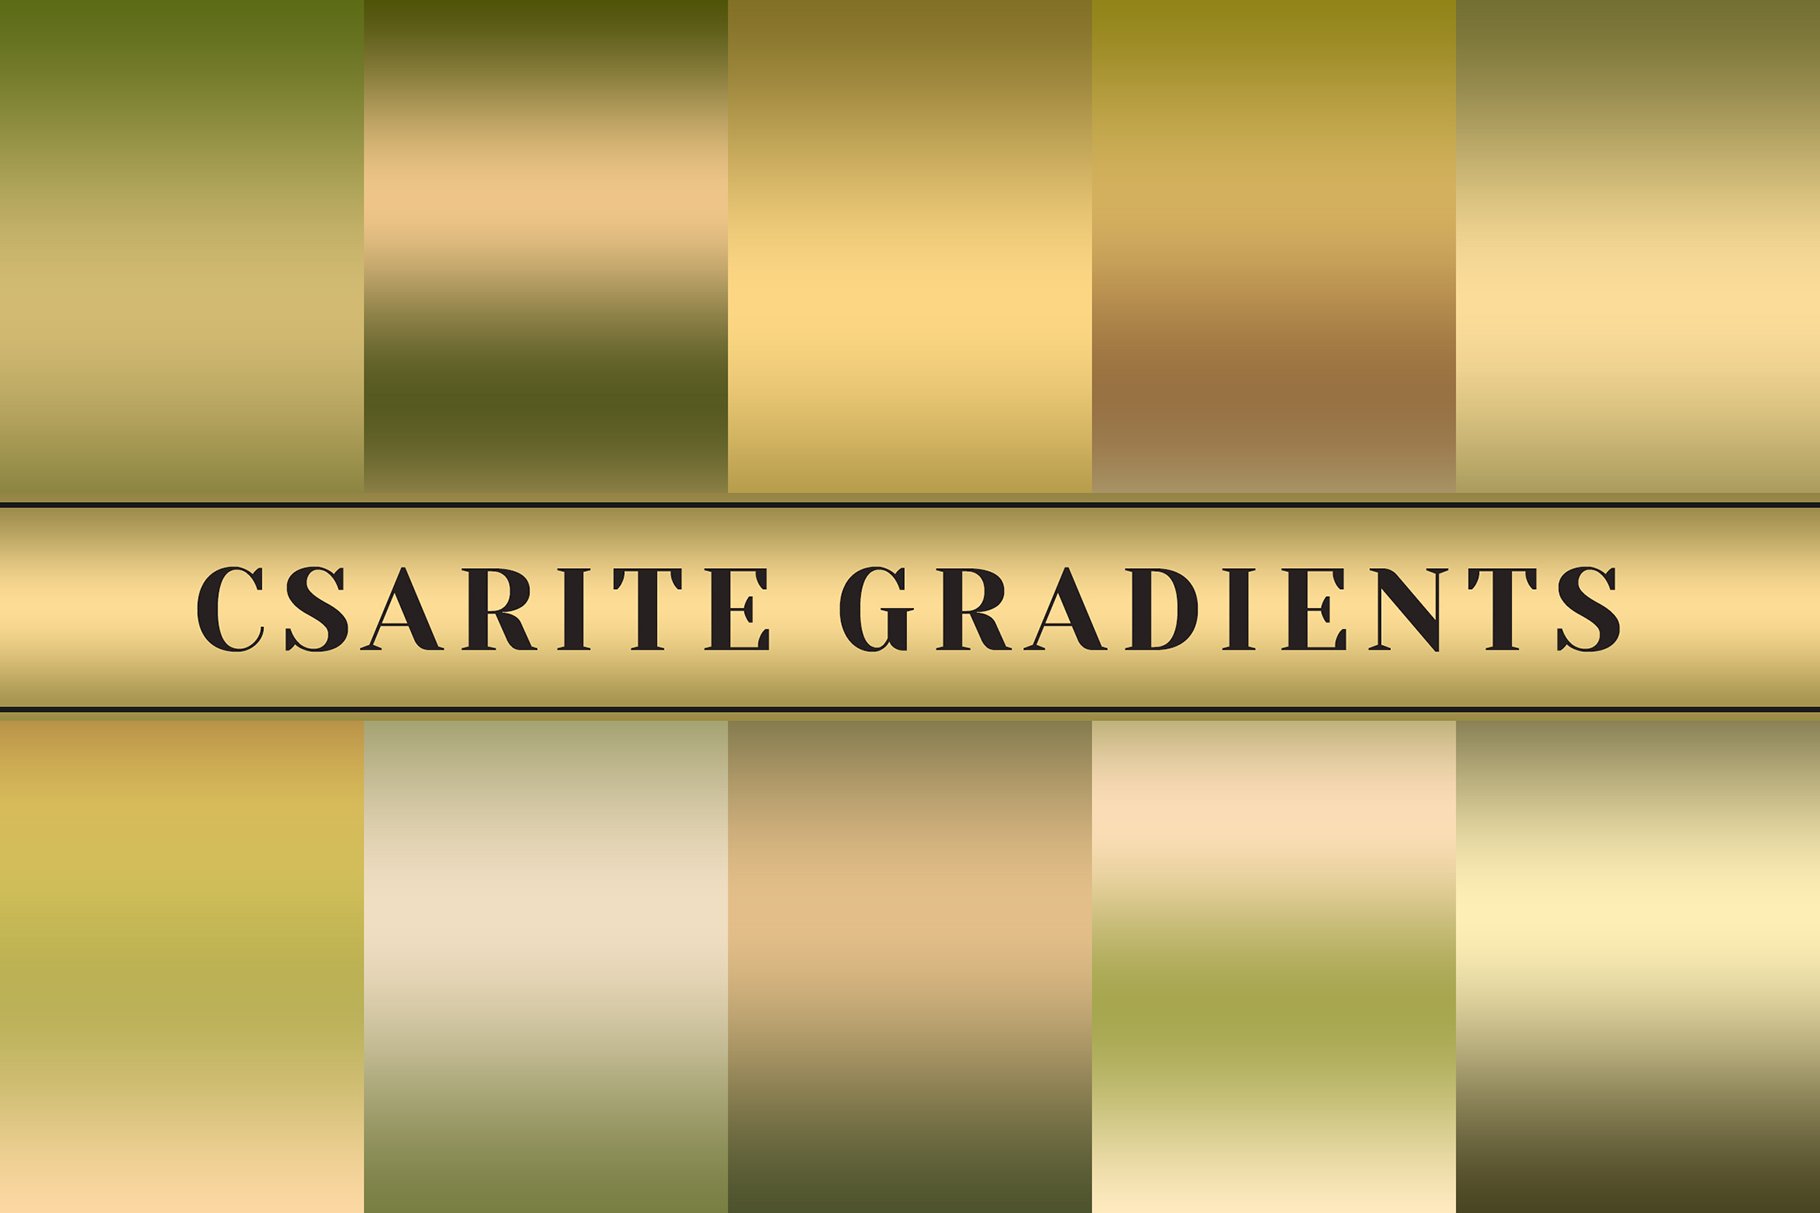 Csarite Gradients cover image.